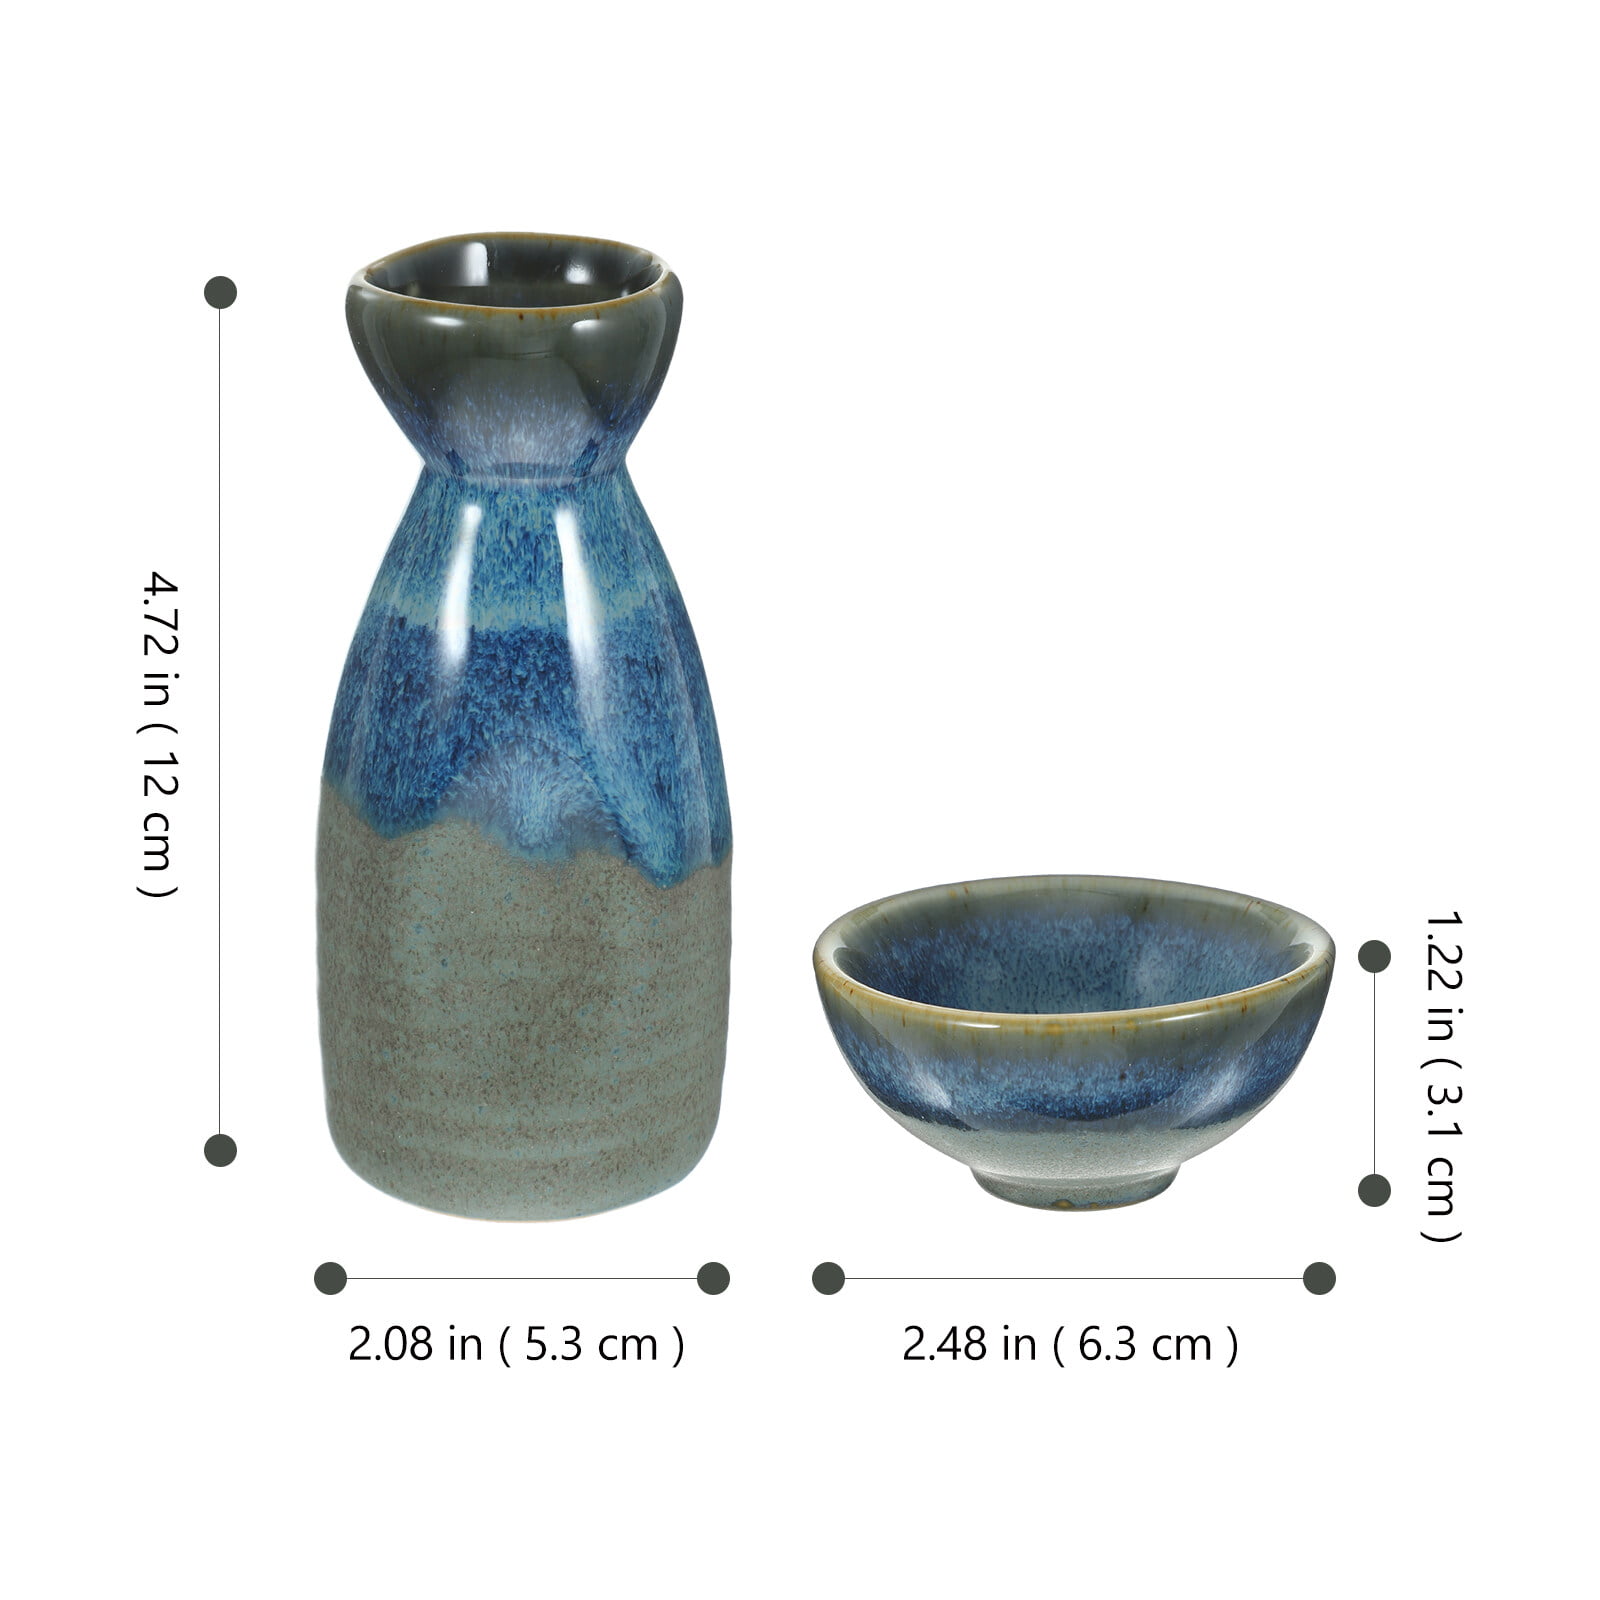 Sake Set Asuka - Sake Cups - Ceramic Sake - My Japanese Home